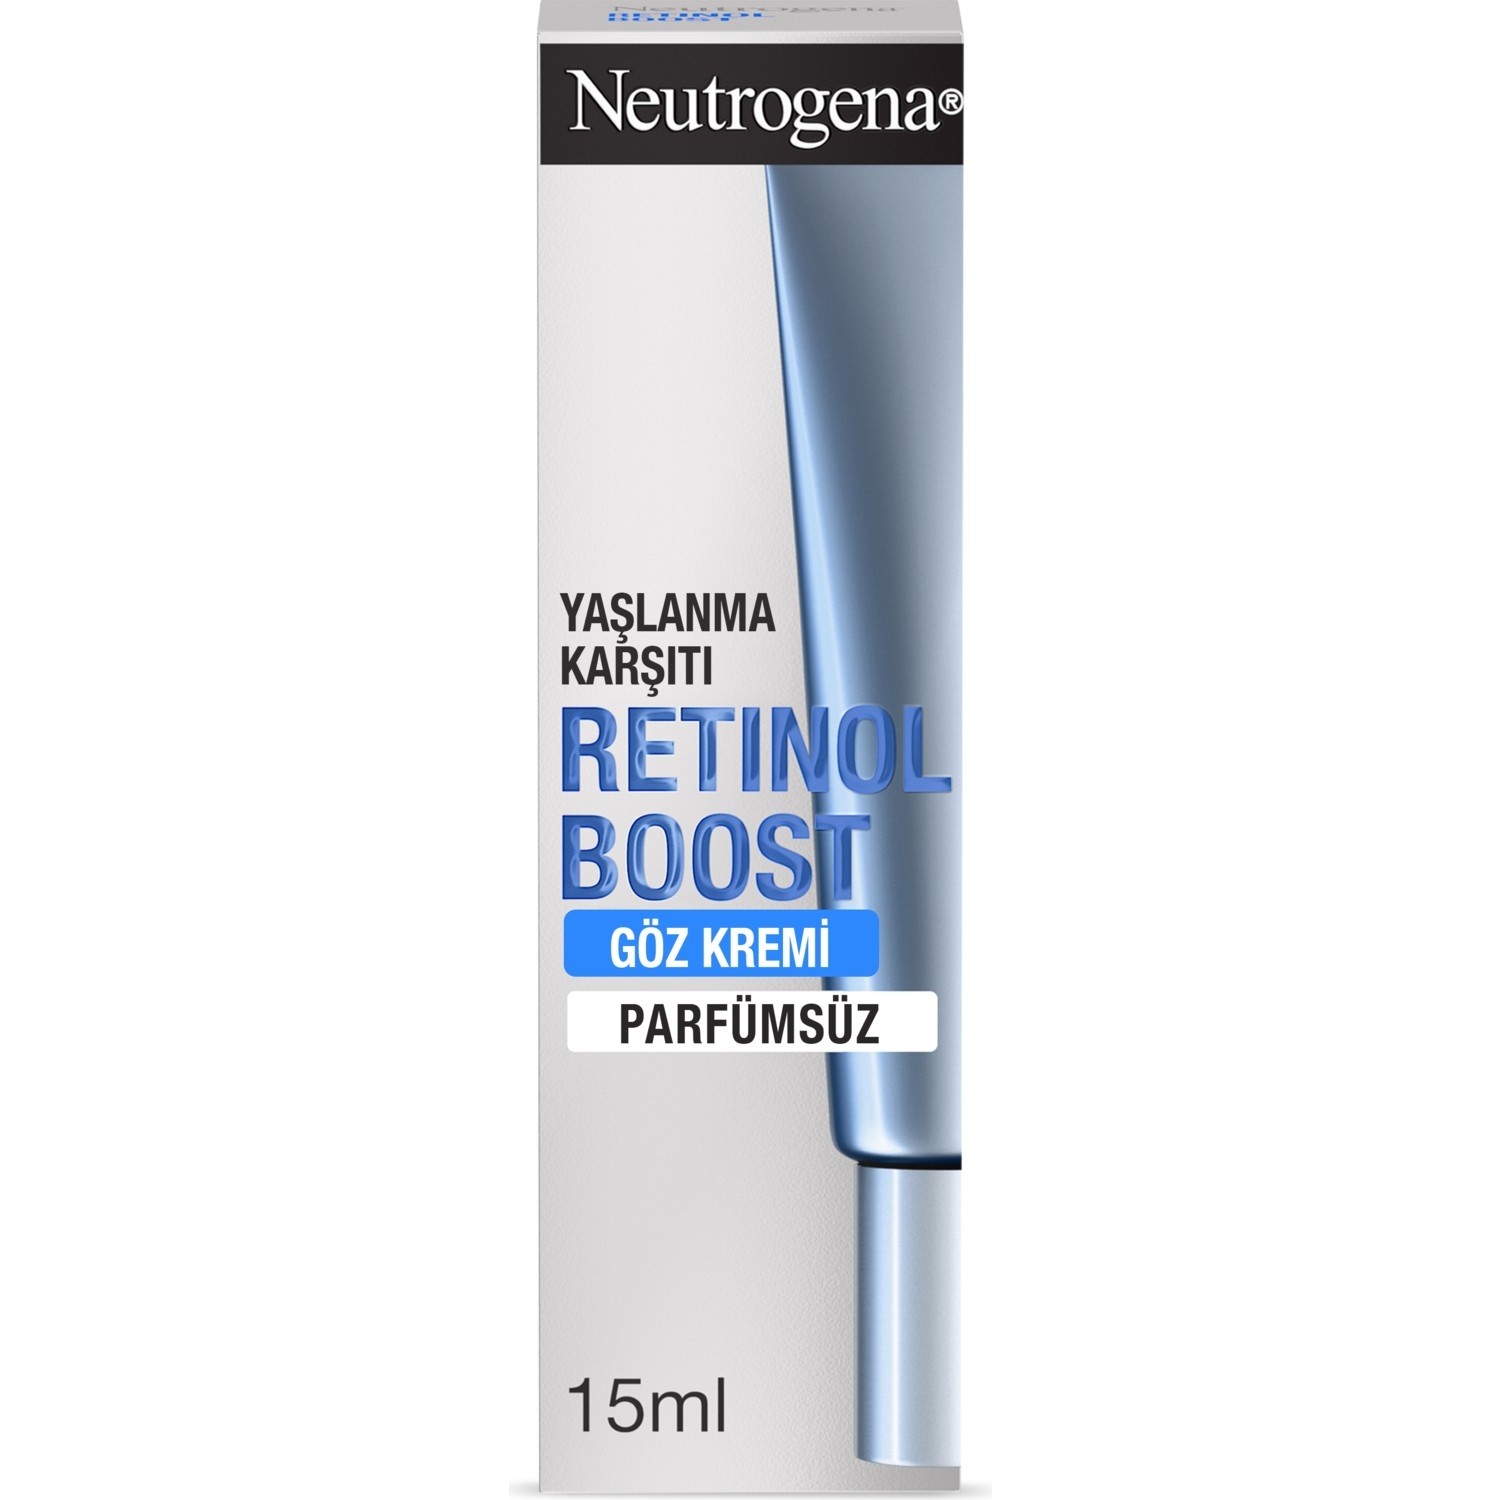 Крем для кожи вокруг глаз против морщин Neutrogena Retinol Boost, 15 мл крем для кожи вокруг глаз против морщин neutrogena retinol boost 15 мл